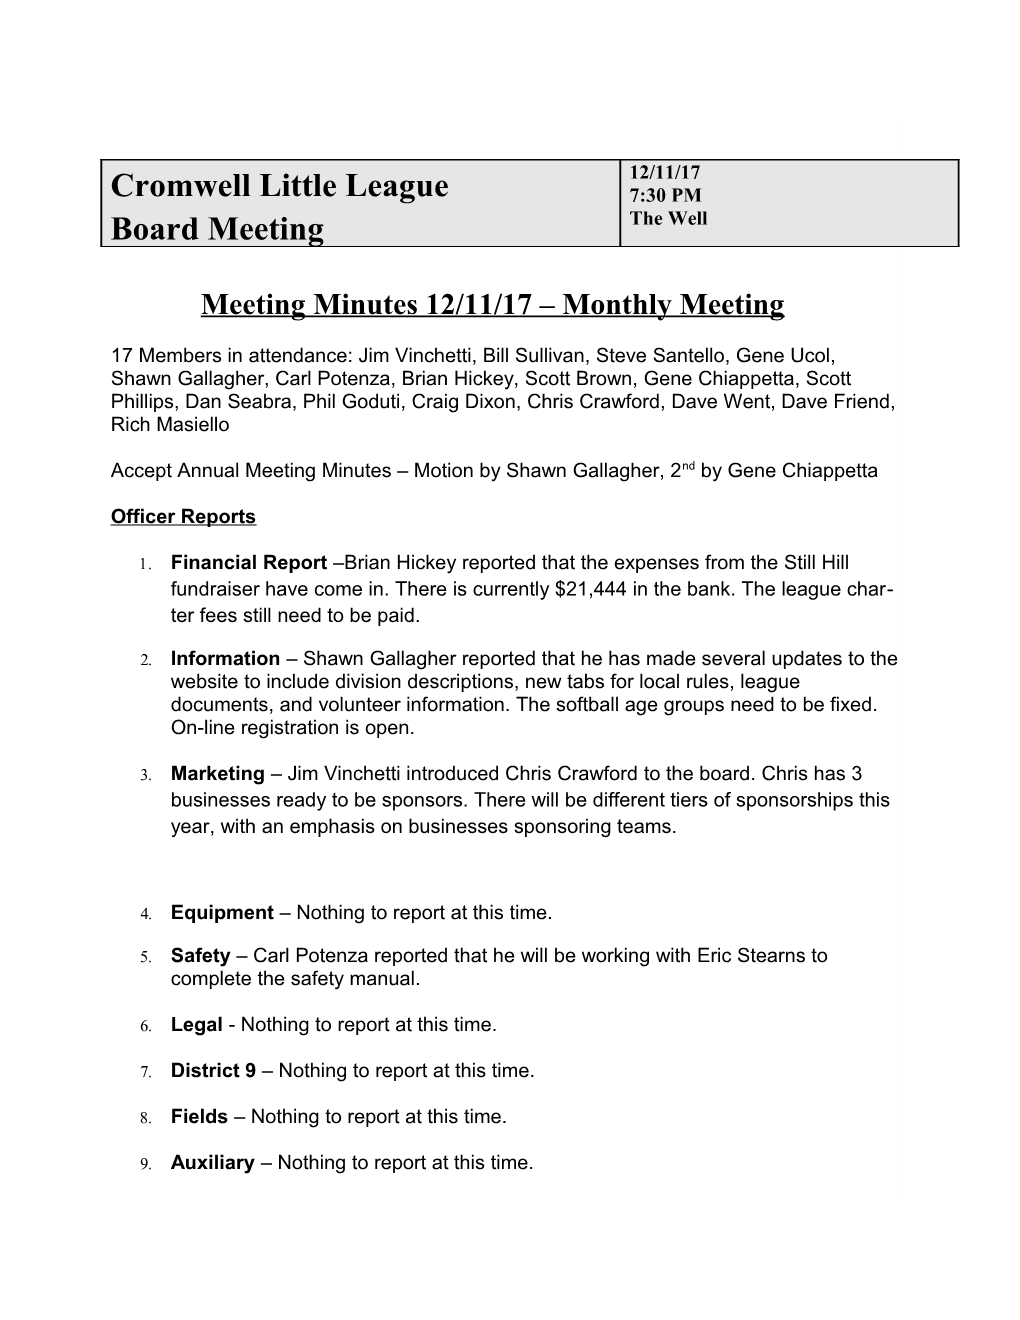 Cromwell Little League Board Meeting